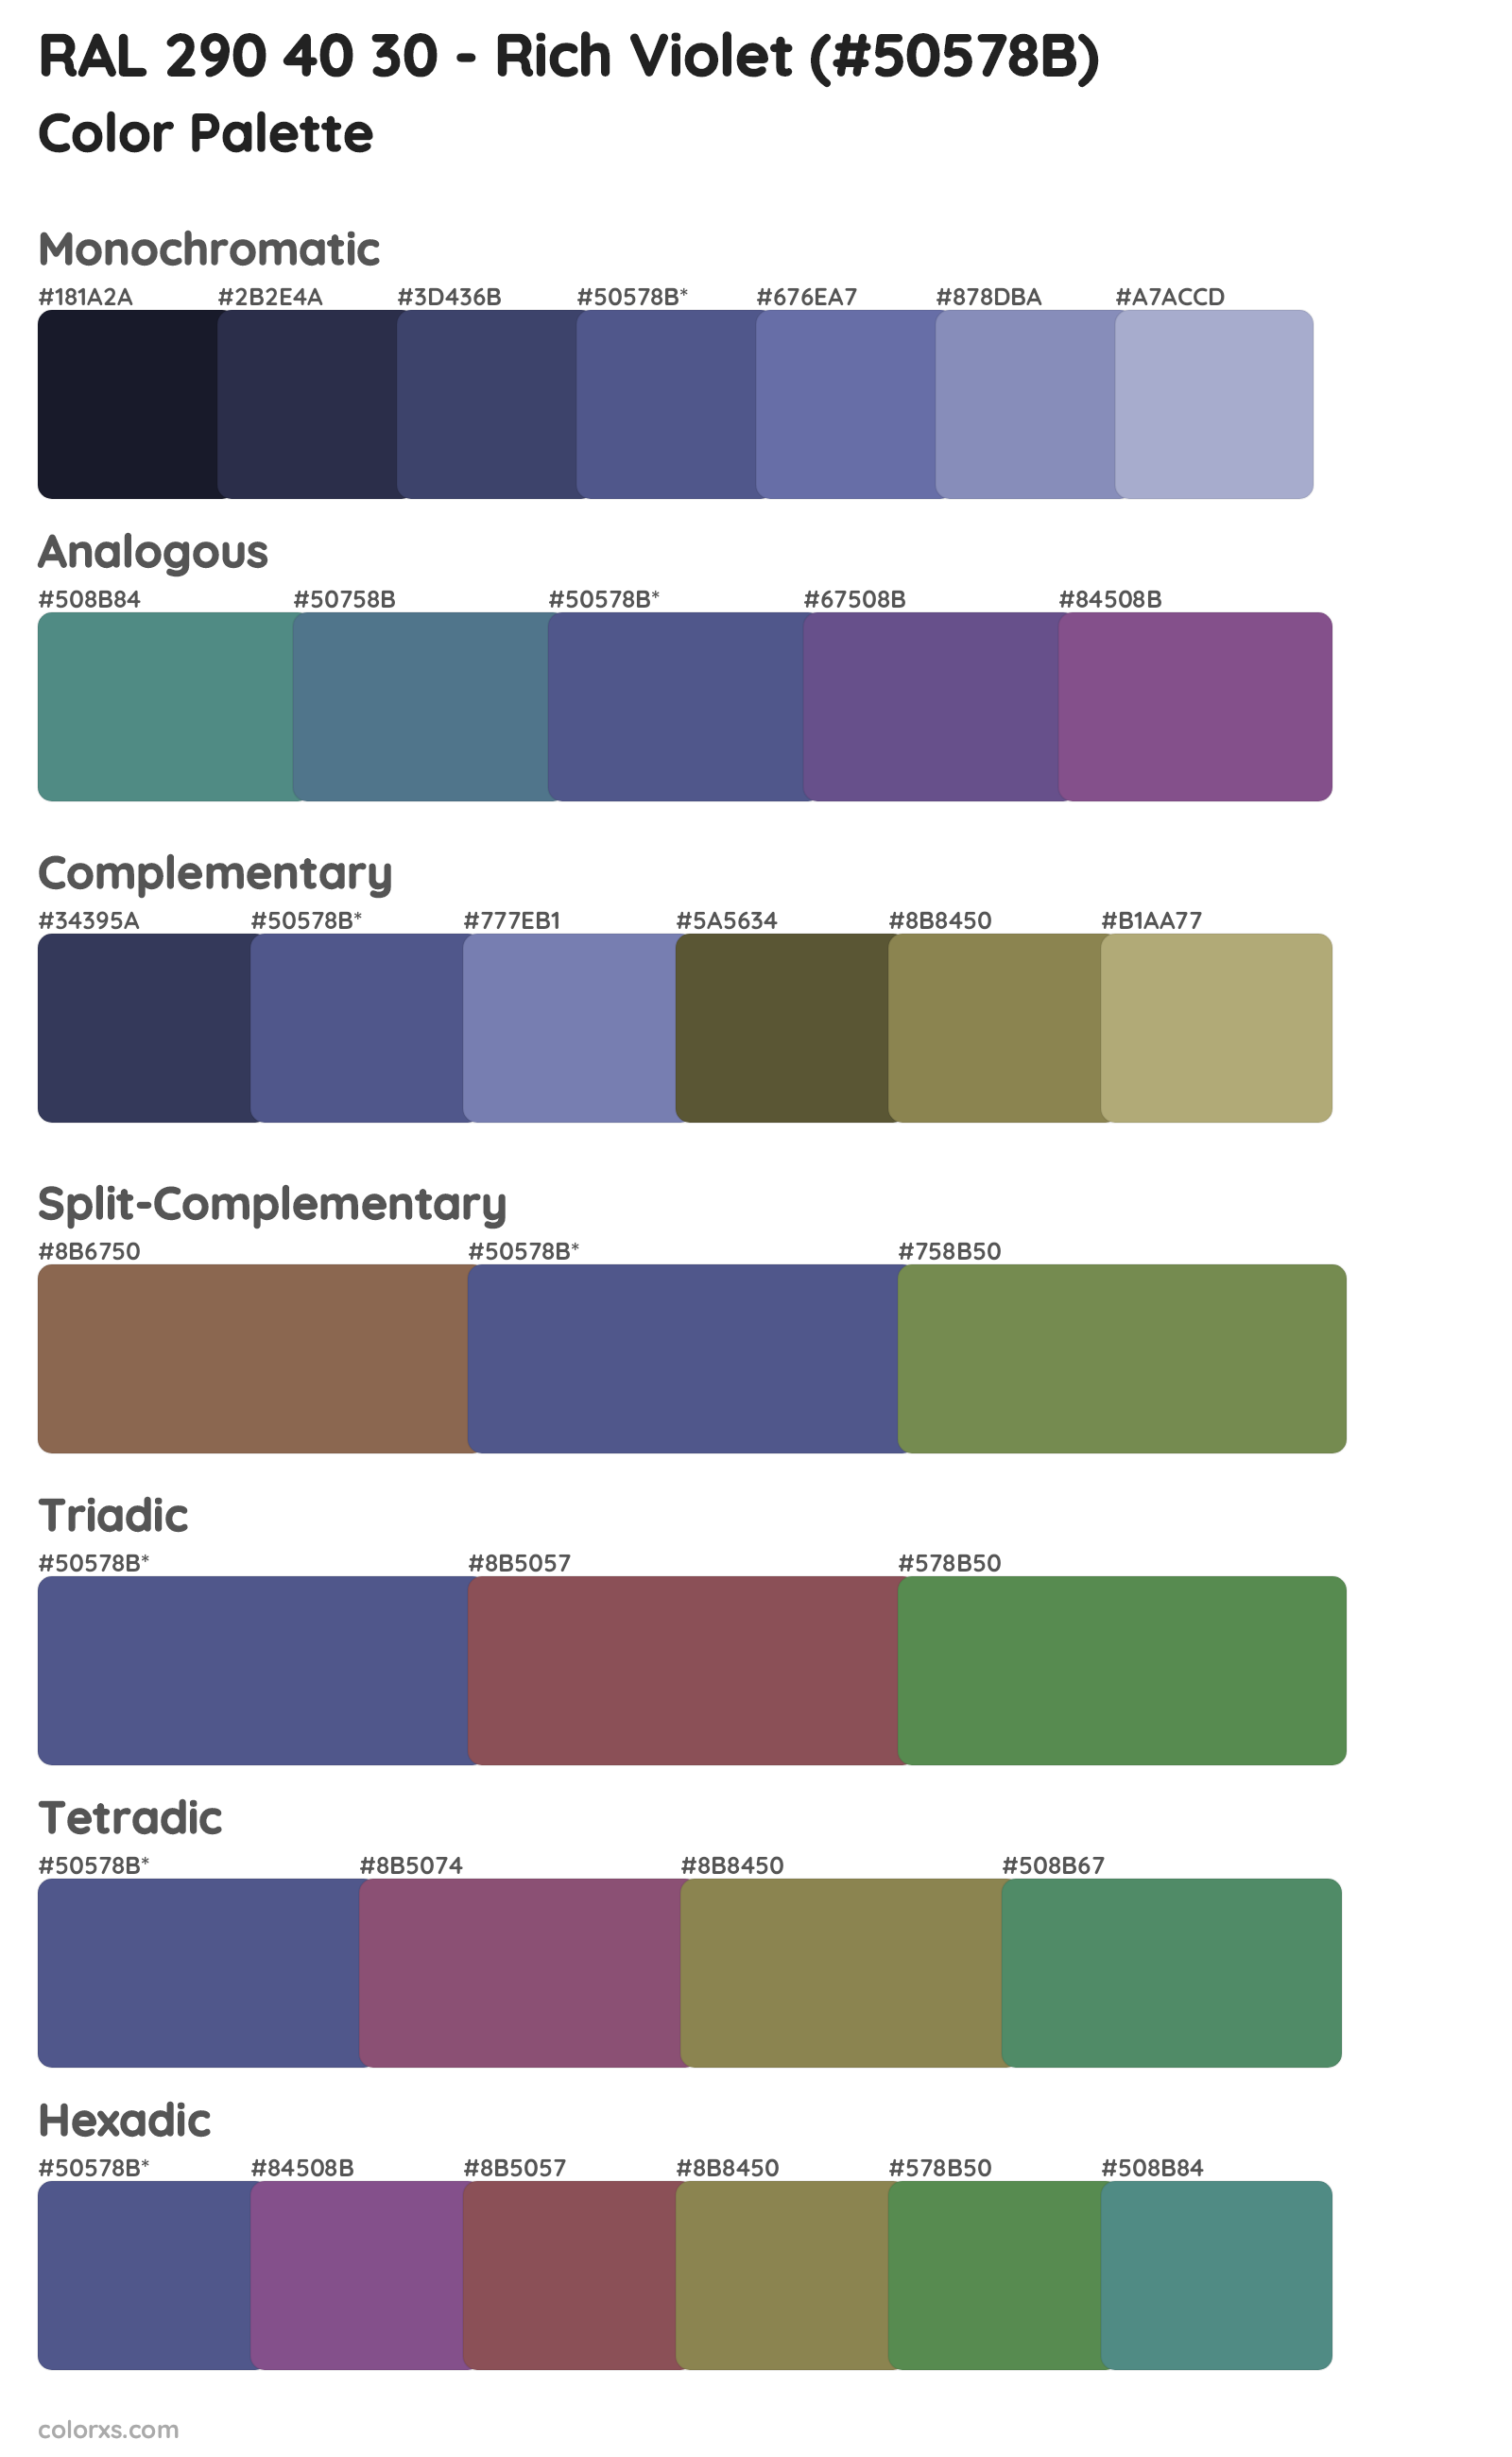 RAL 290 40 30 - Rich Violet Color Scheme Palettes